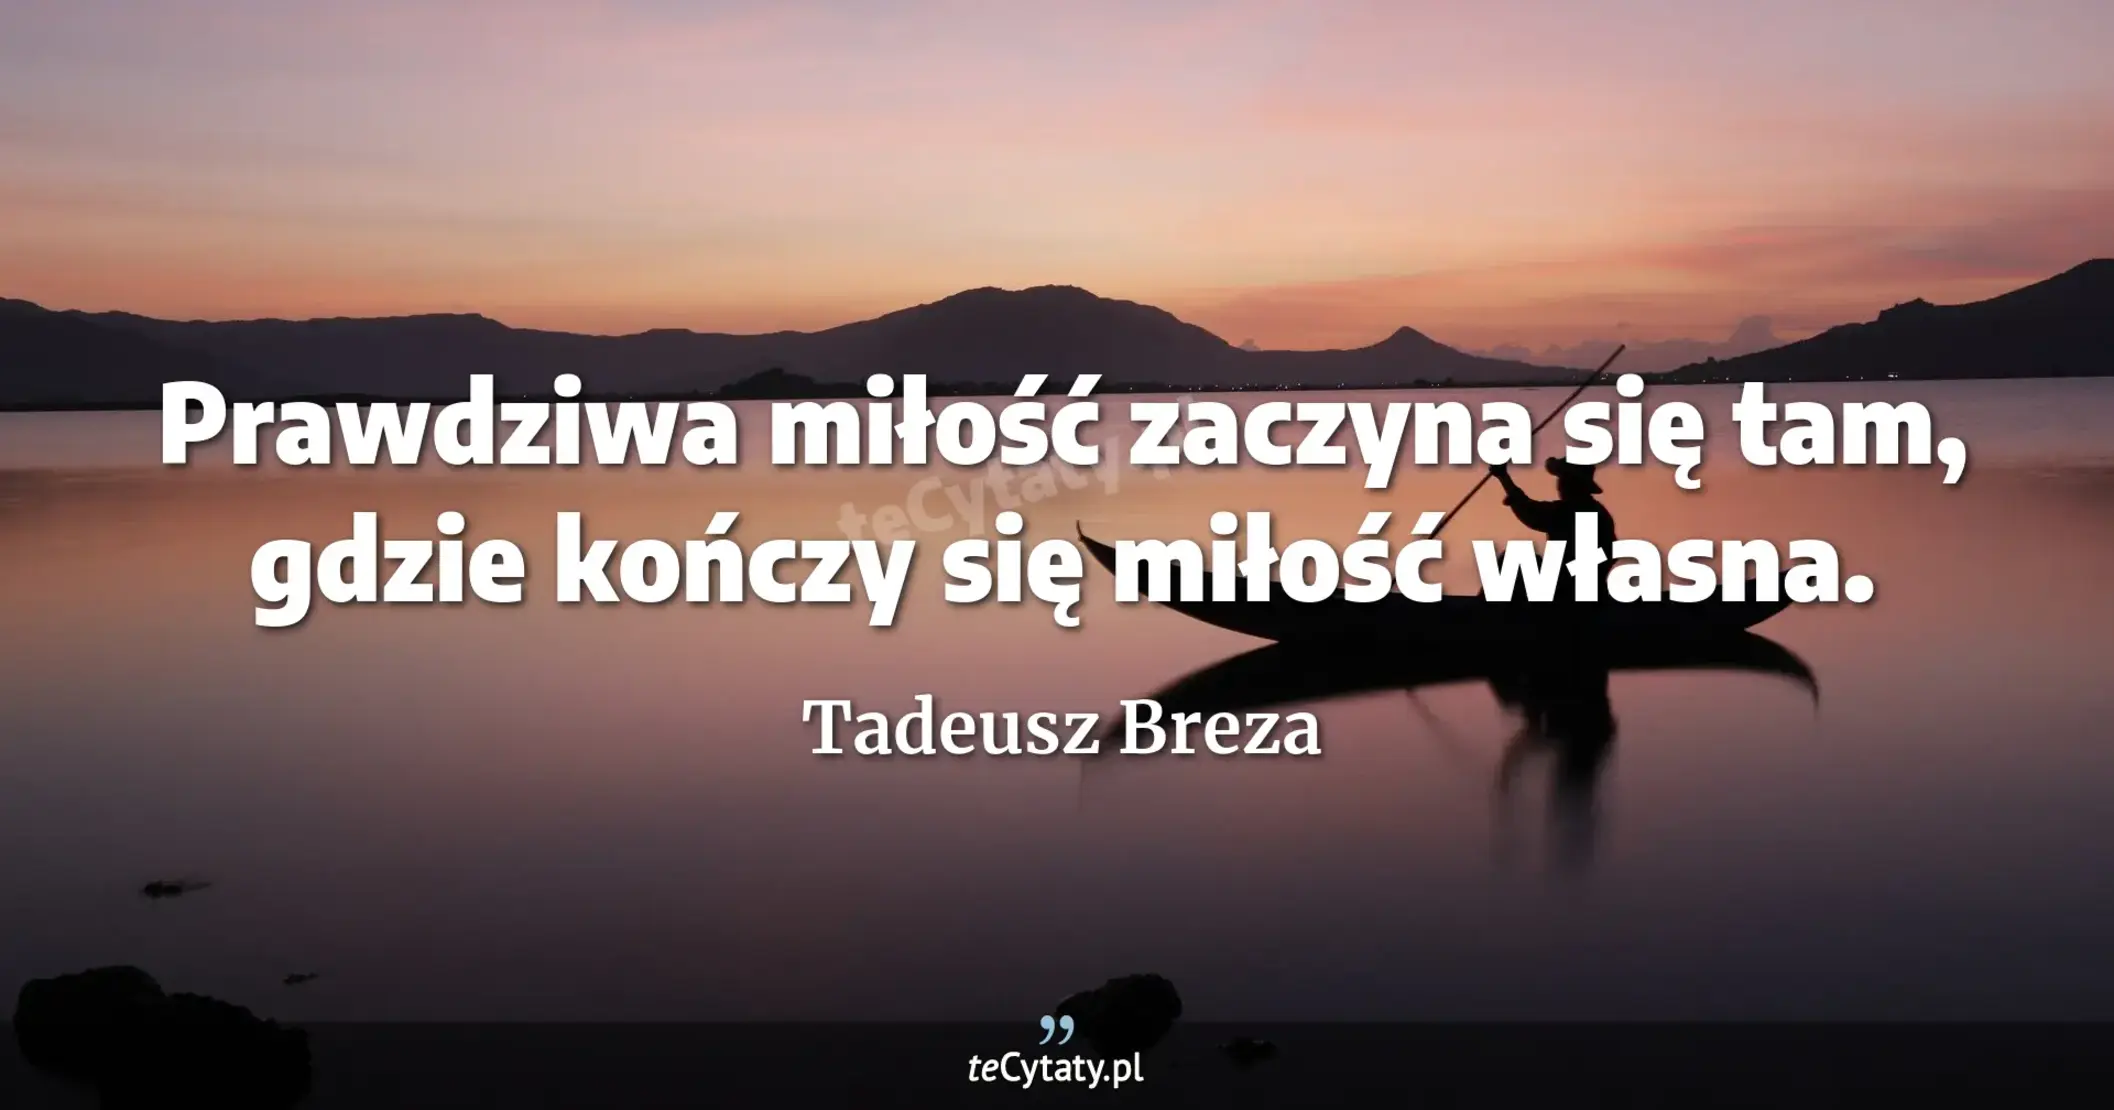 Prawdziwa miłość zaczyna się tam, gdzie kończy się miłość własna. - Tadeusz Breza